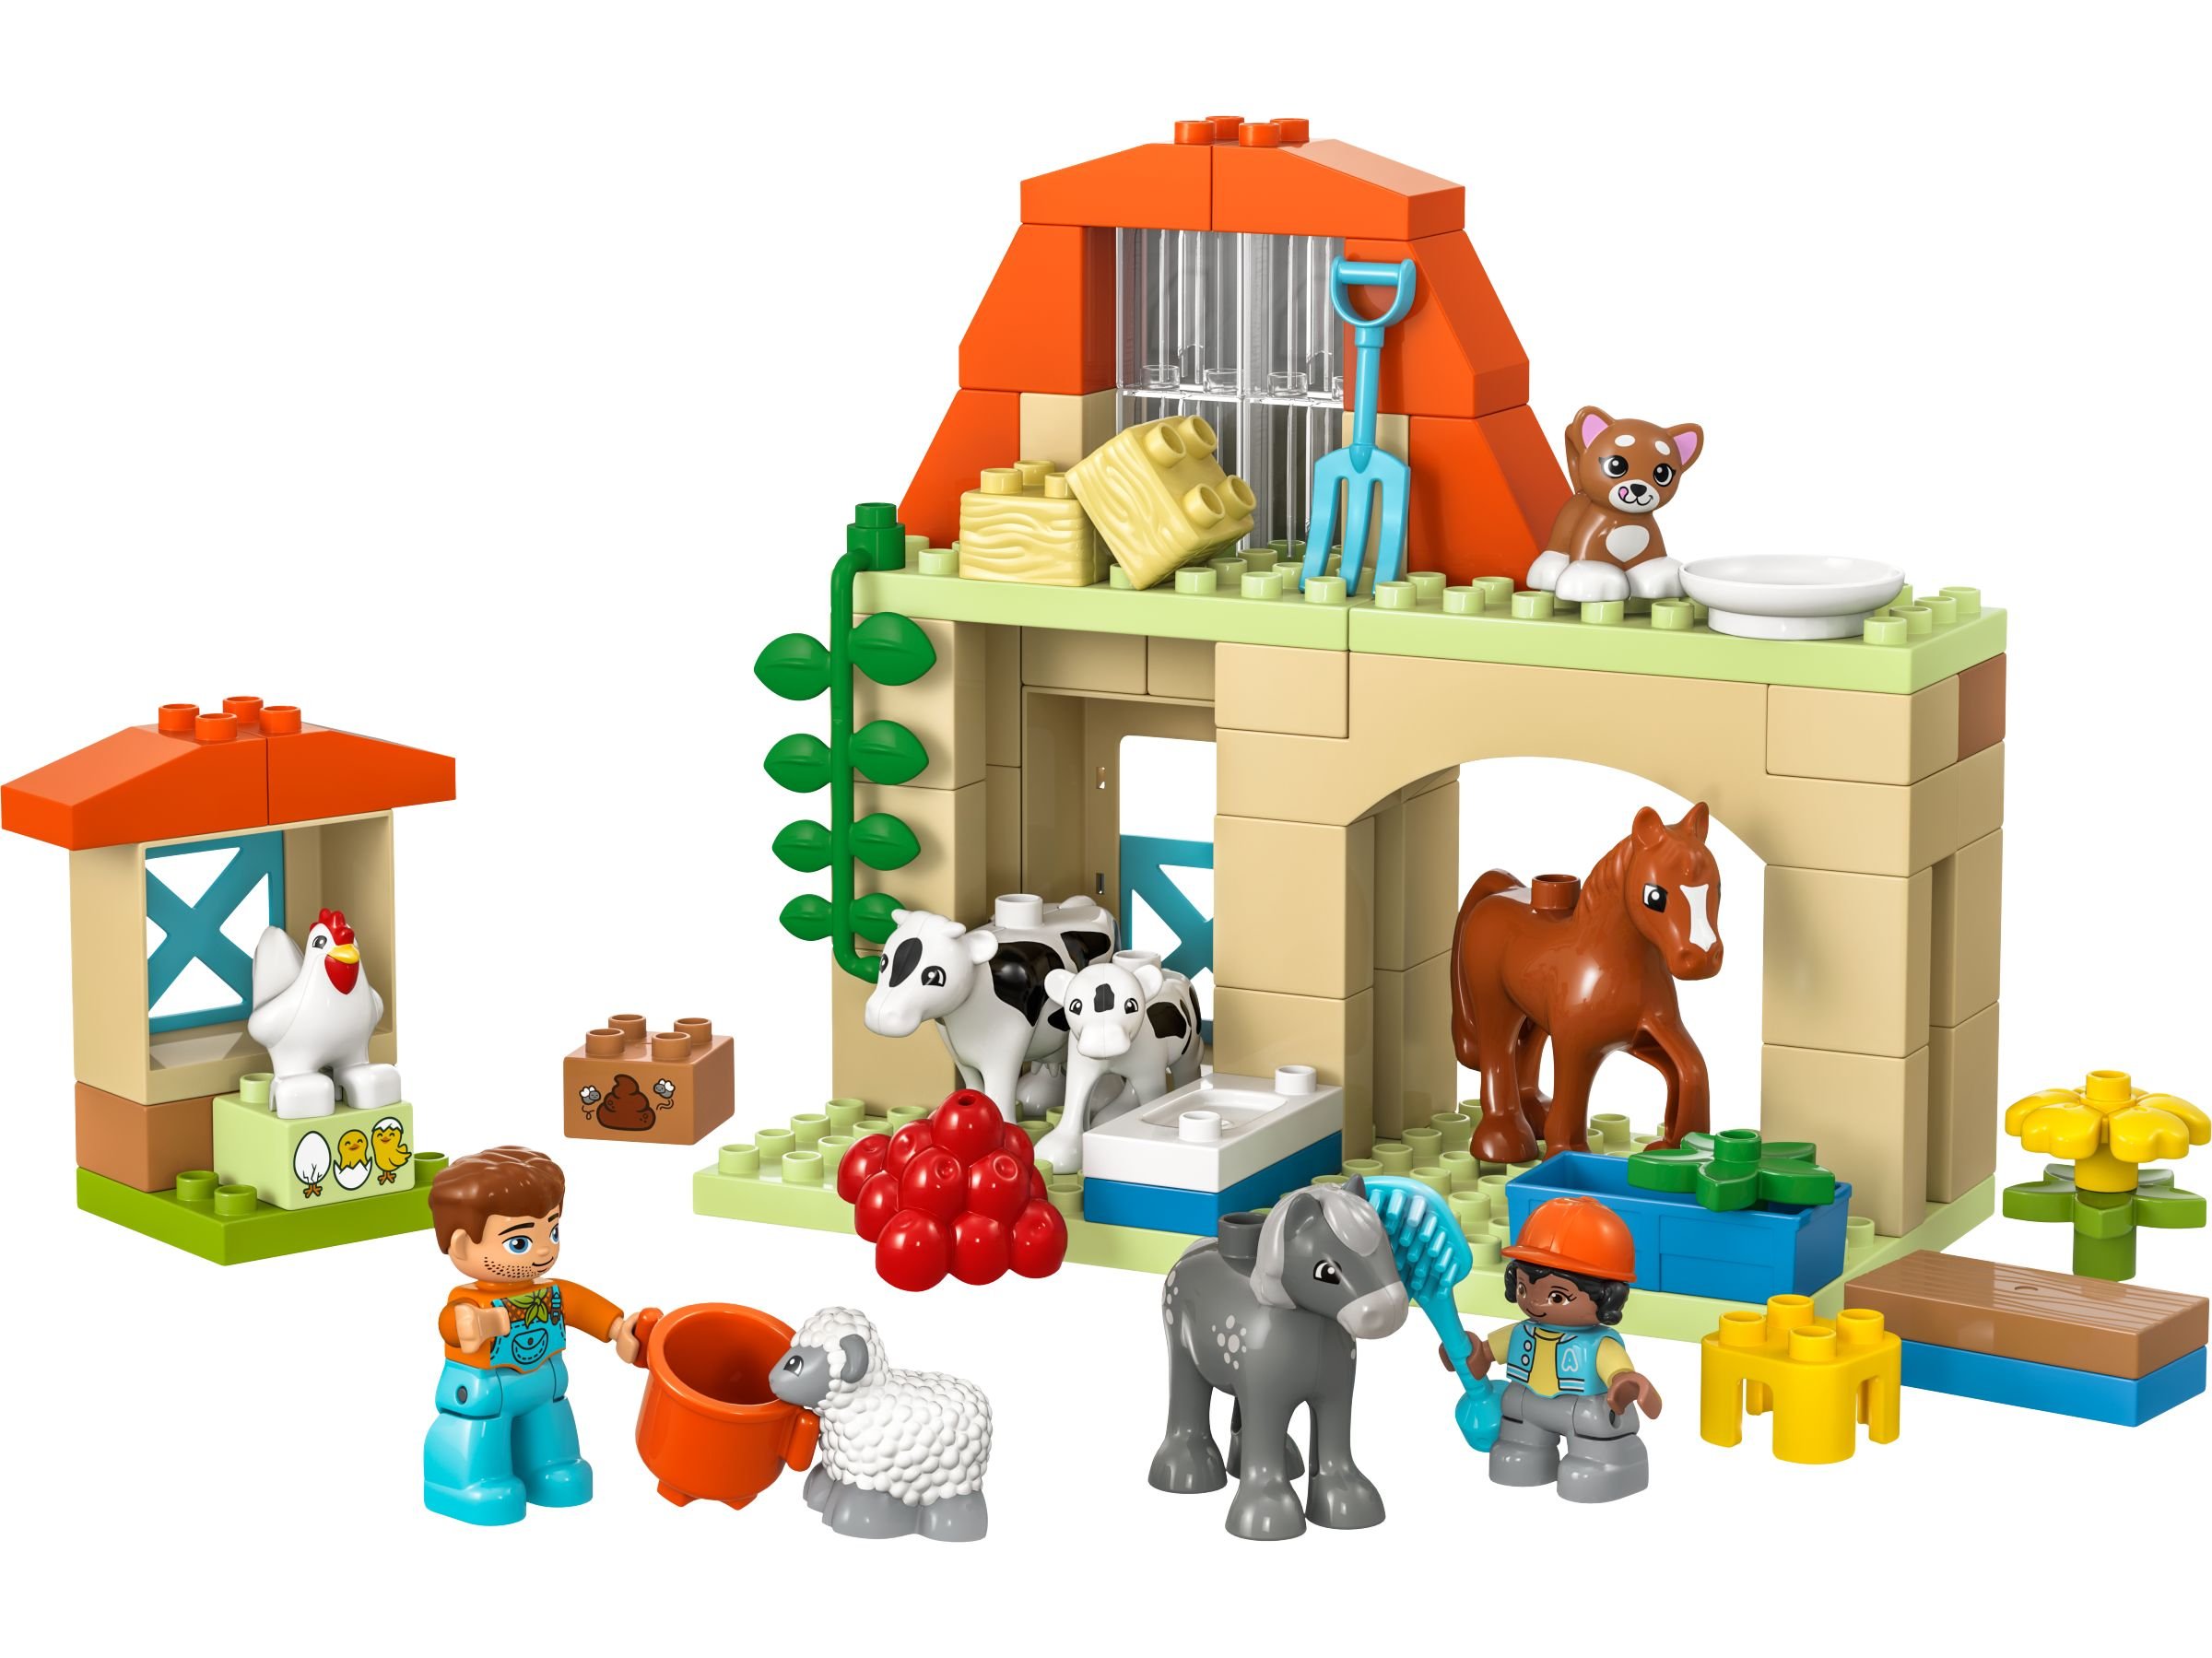 LEGO Duplo 10416 Tierpflege auf dem Bauernhof LEGO_10416_alt1.jpg